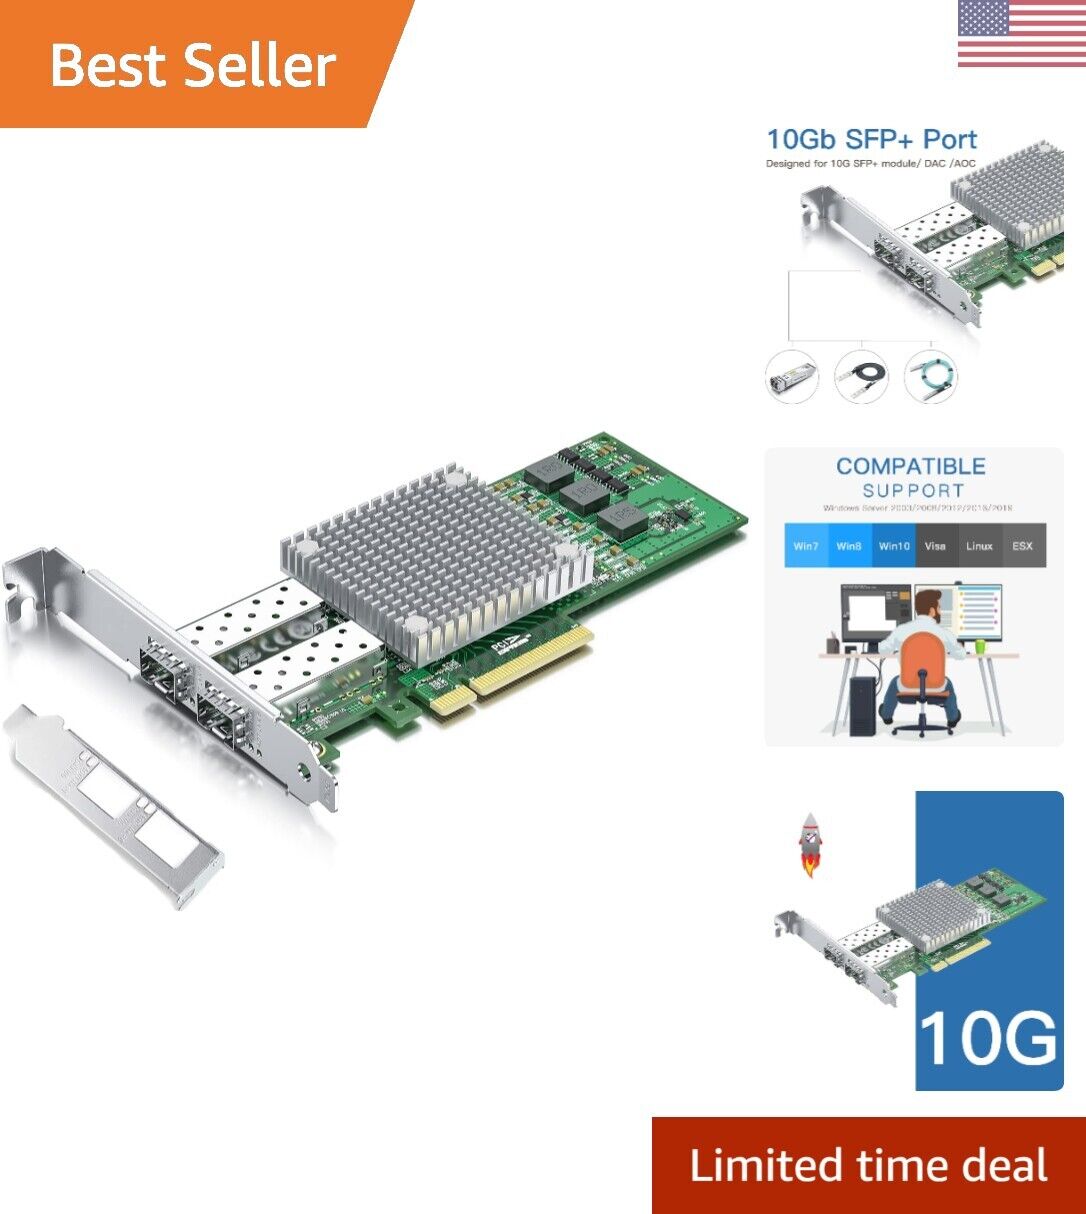 10Gb SFP+ PCI-E Network Card - Dual Port - Broadcom Chip - Windows/Linux/VMware